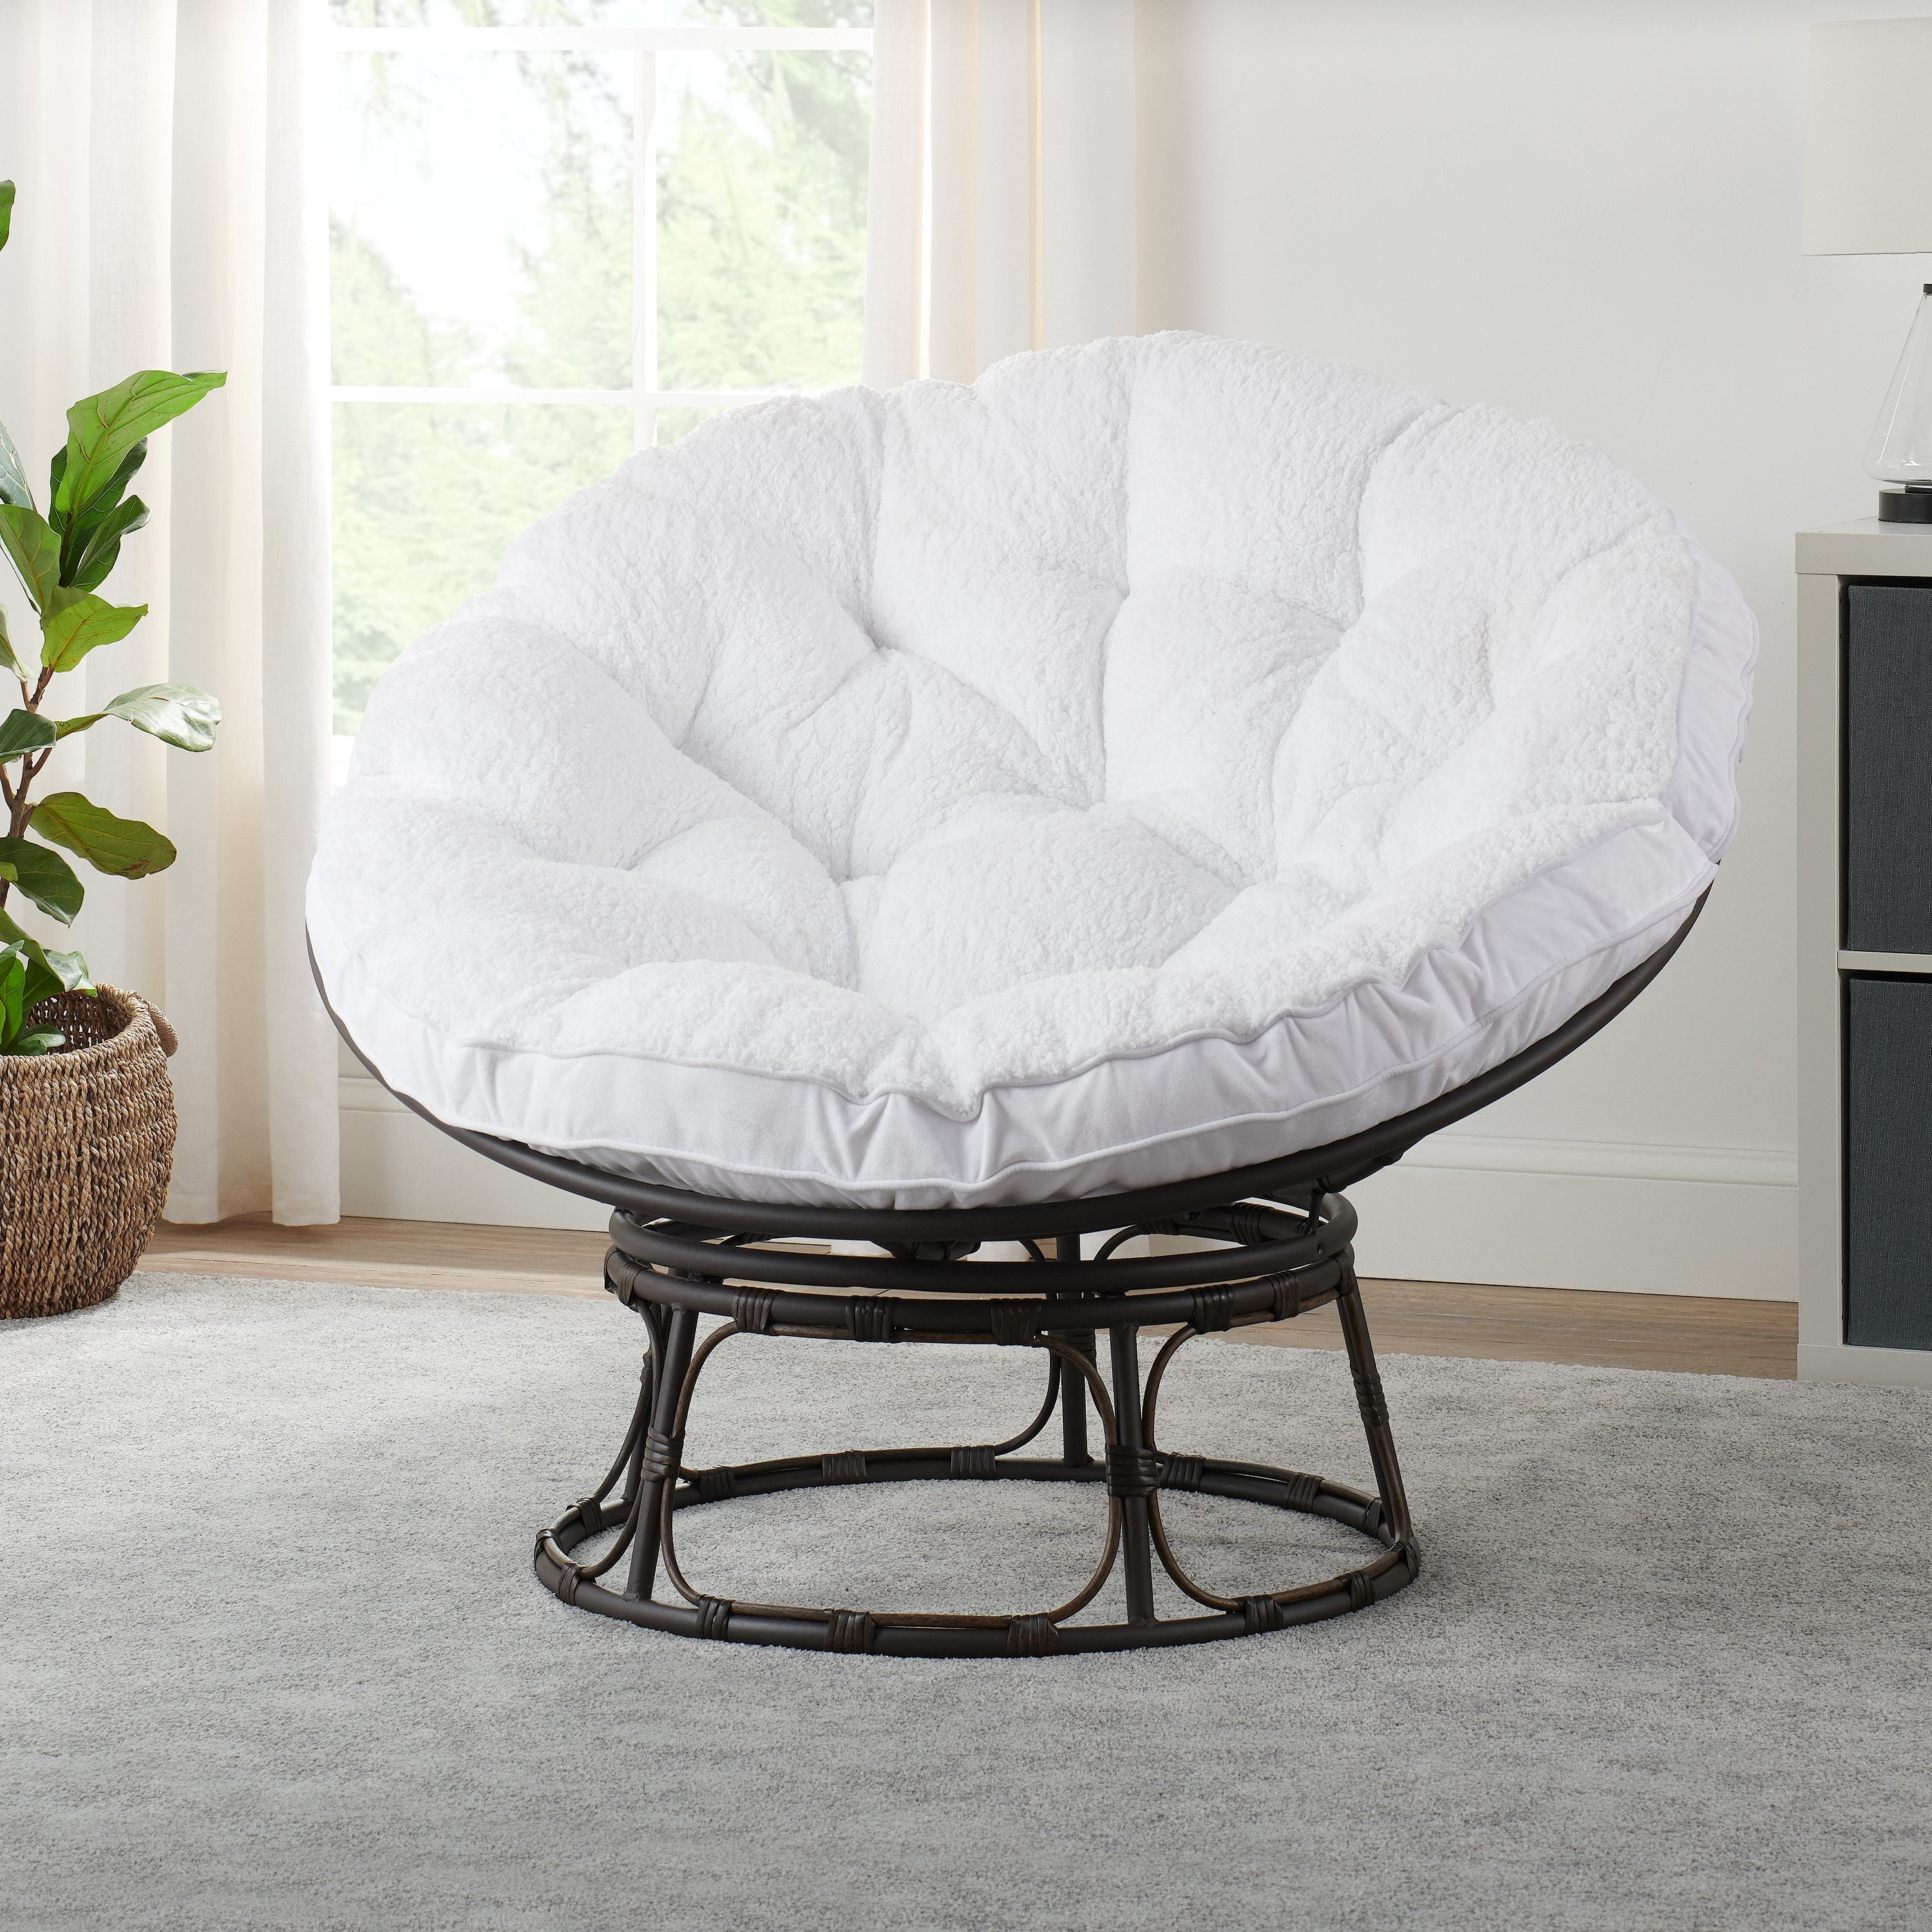 Details about   #Vision# Papasan Chair Cushion Seat Pads Cushion HQ 